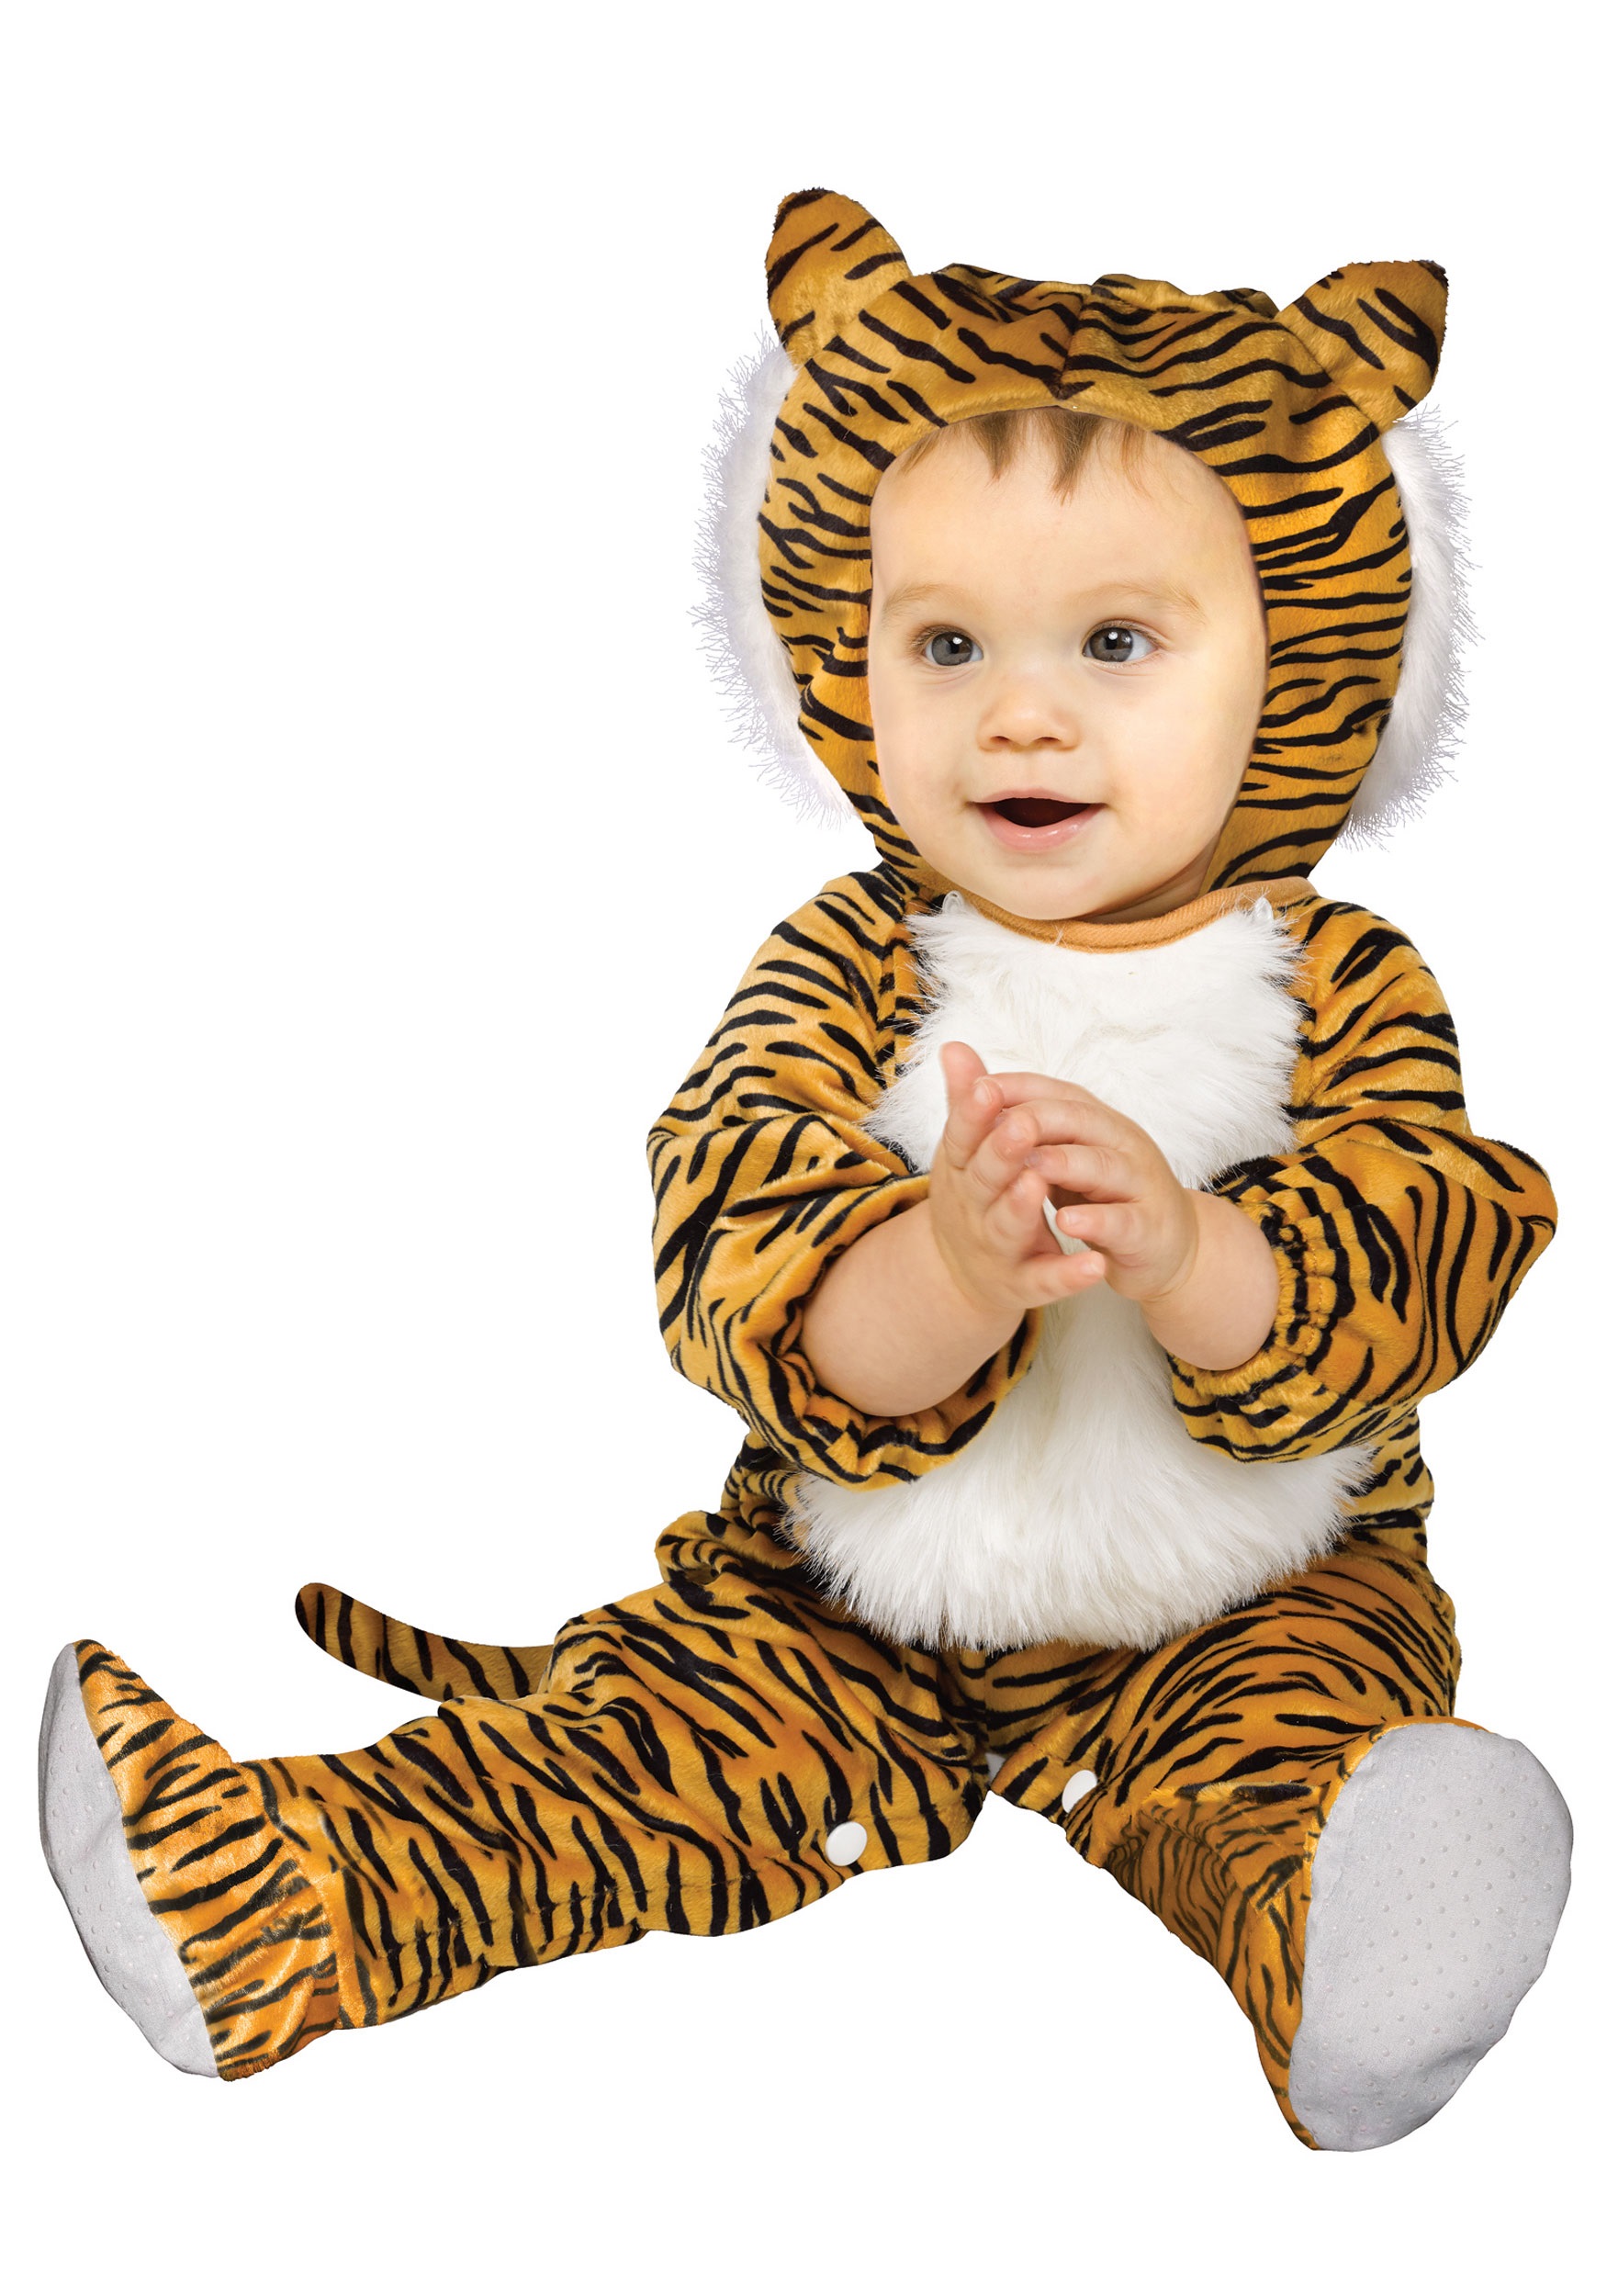 Cuddly Tiger Infant/Toddler Costume